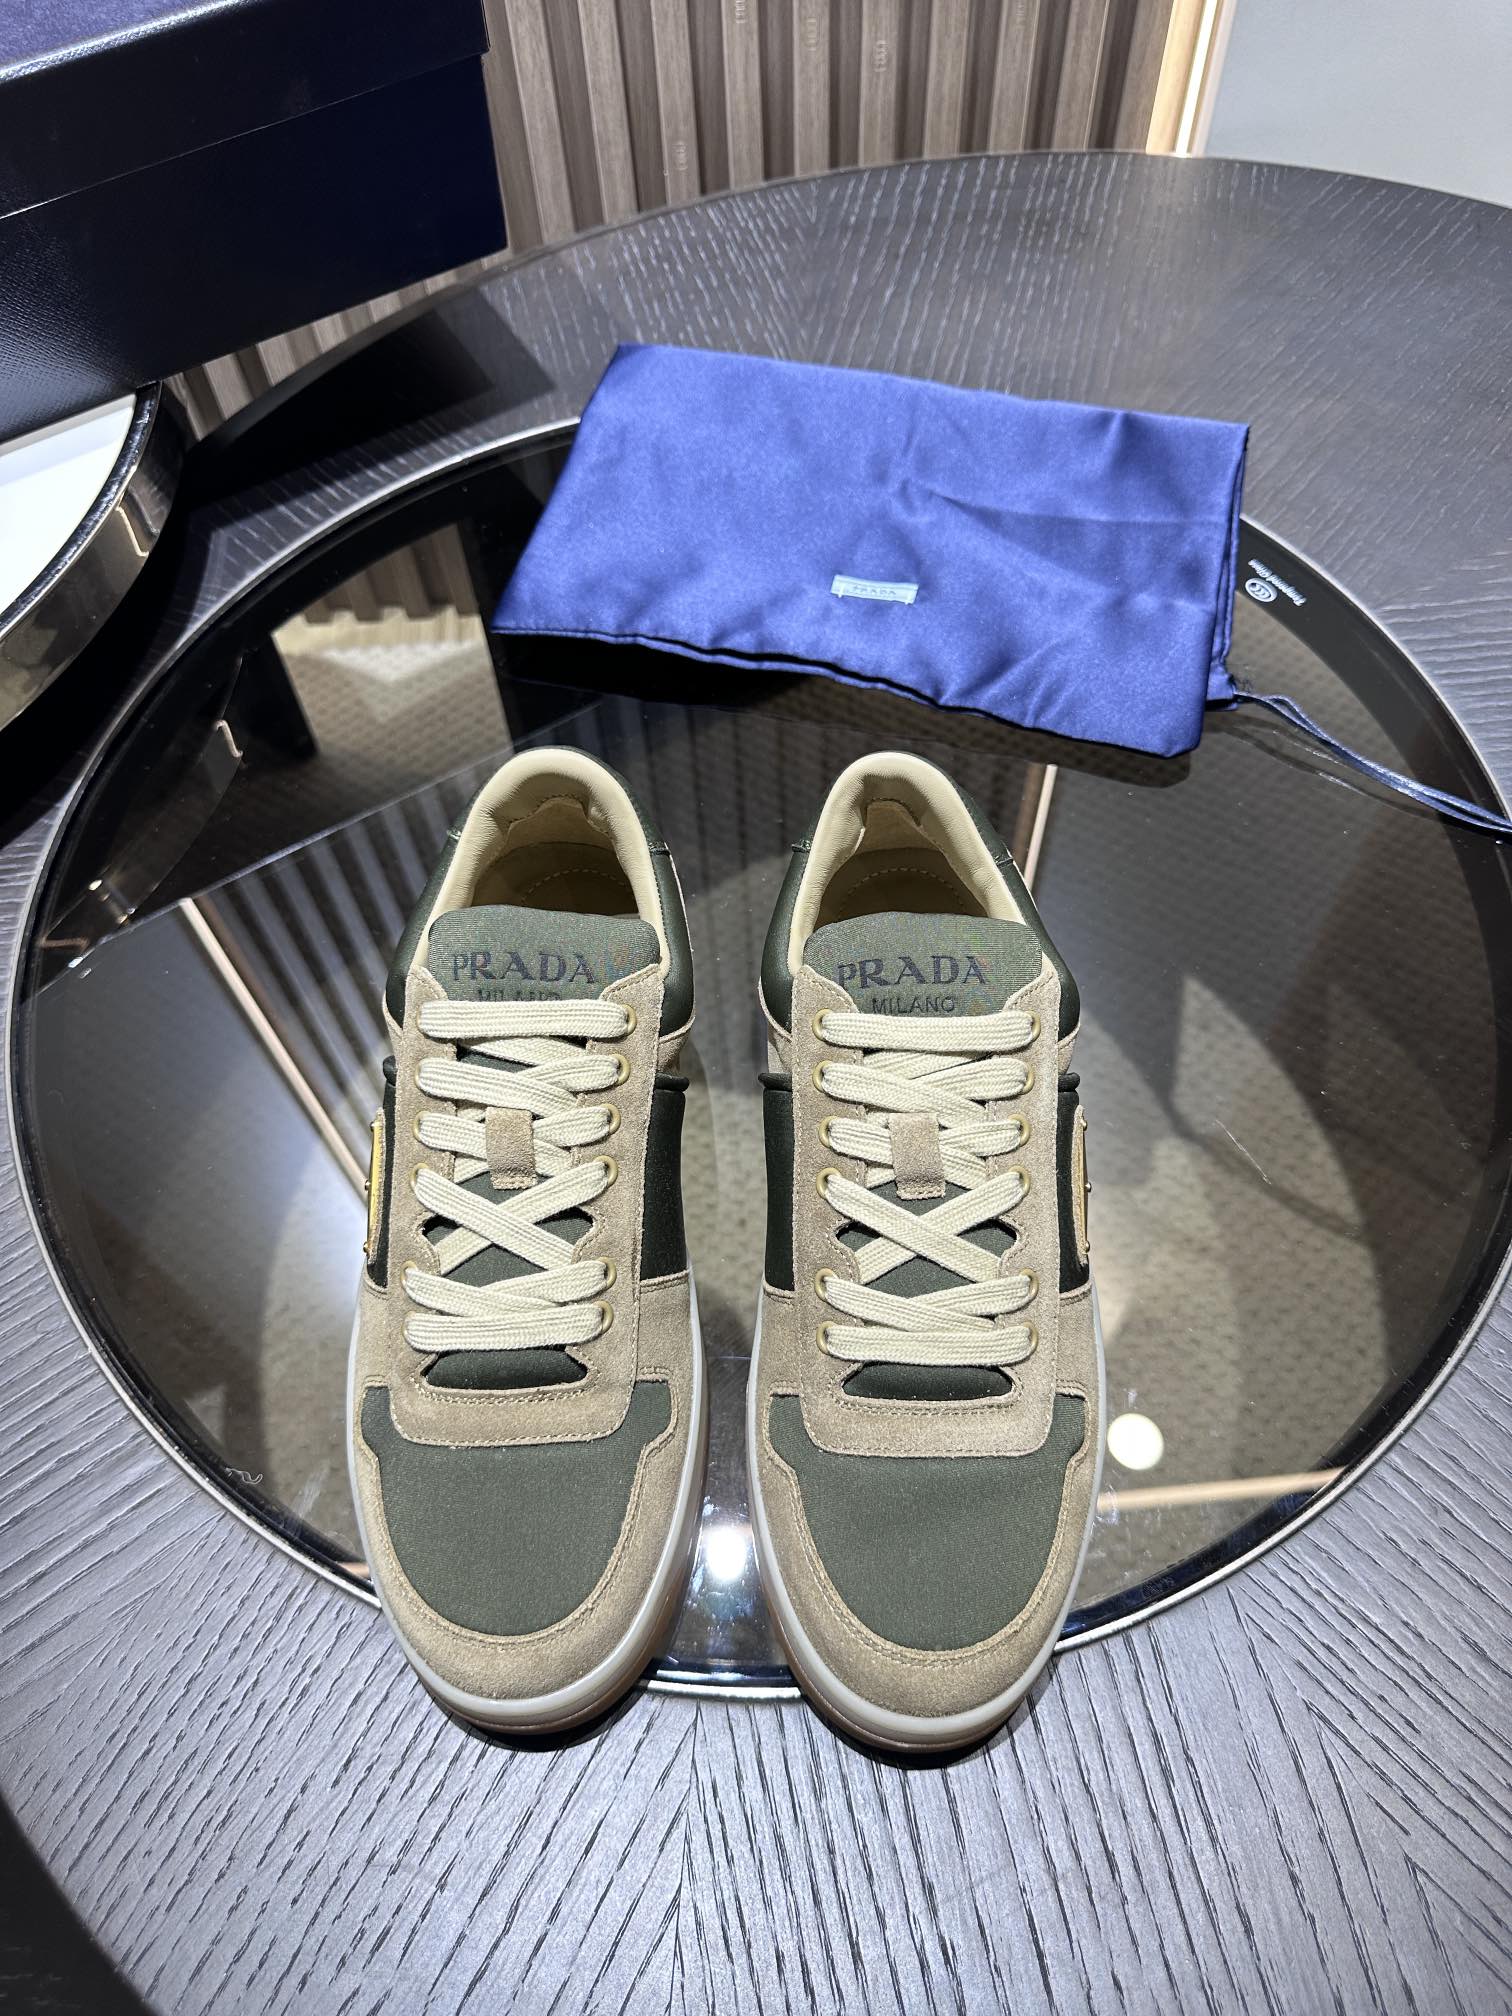 批esdjb????Prada PRAX 01运动鞋集优雅风范与创新设计于一体，融汇Prada系列的典型元素。这款皮革鞋履的鞋帮饰以涂珐琅金属徽标，与配有橡胶花纹鞋底\nSize 39-44(38.45订做)